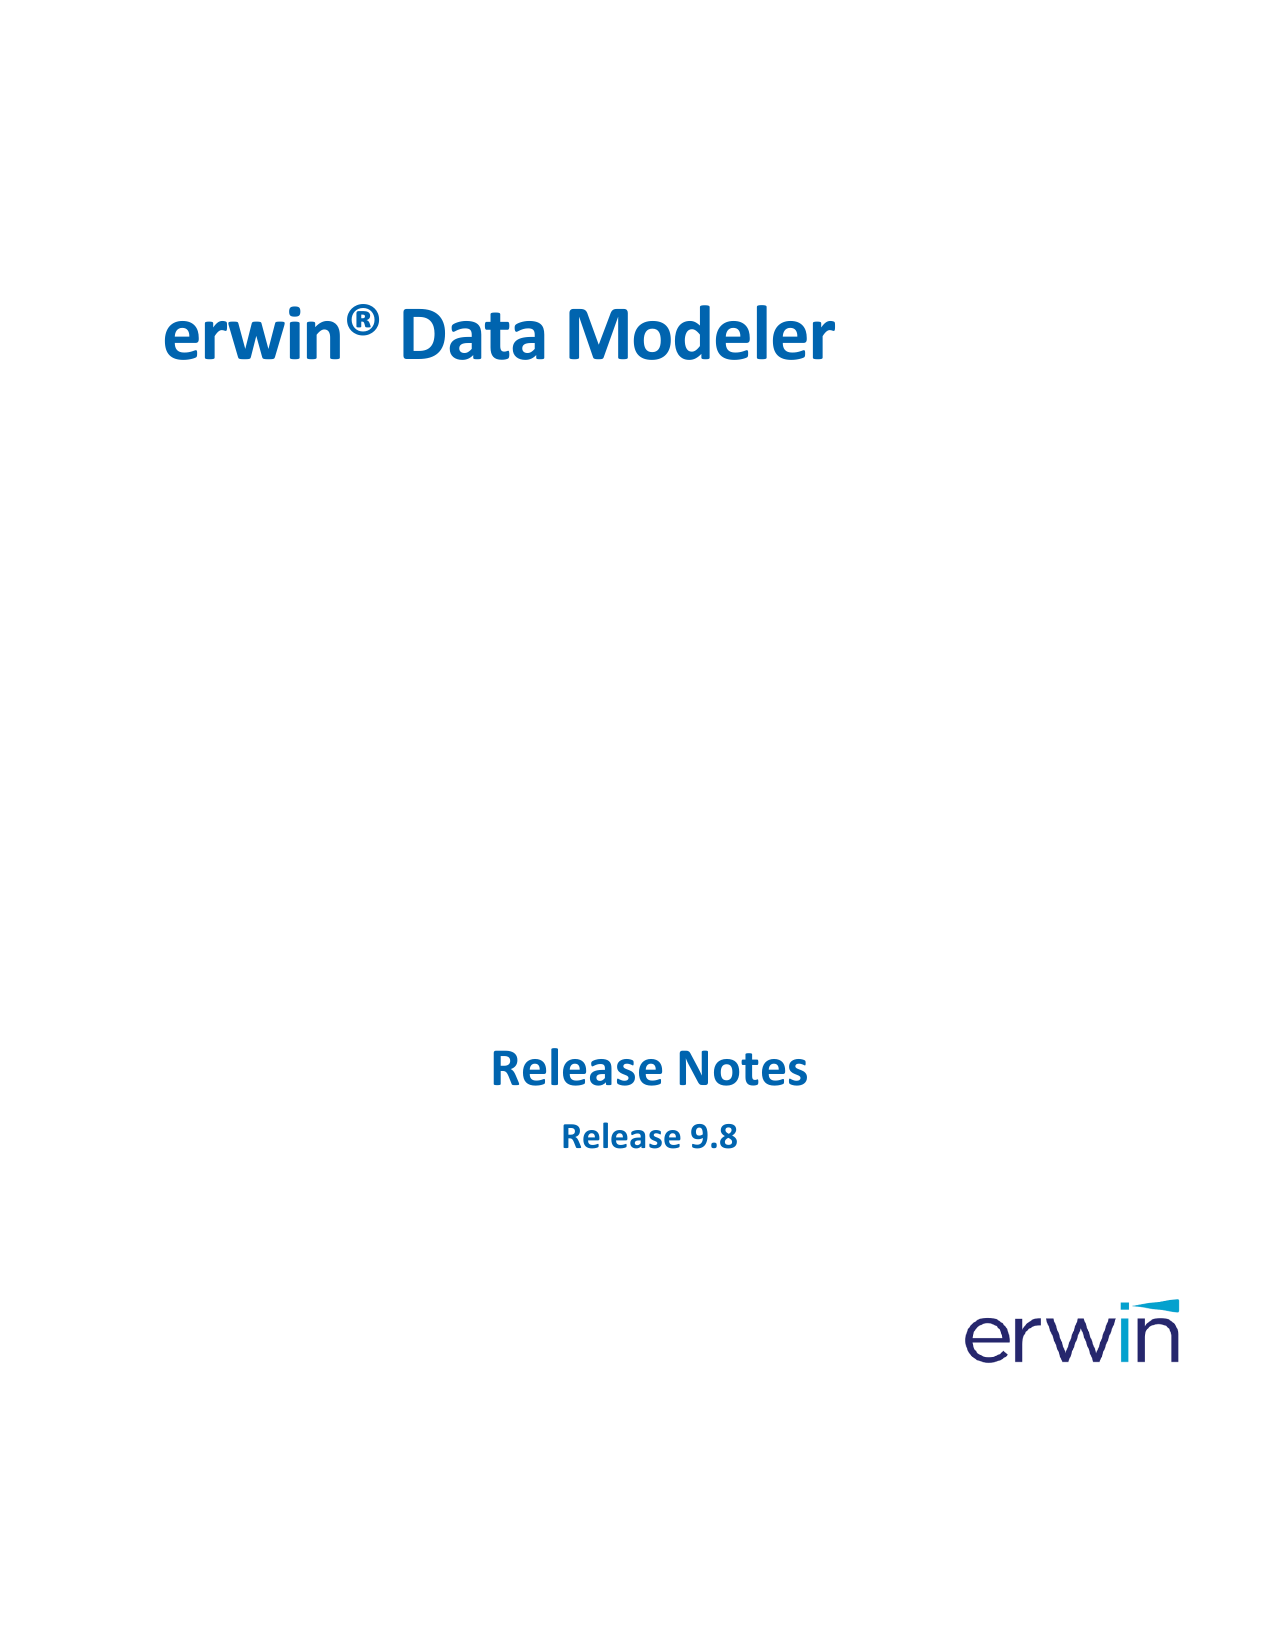 erwin data modeler version history